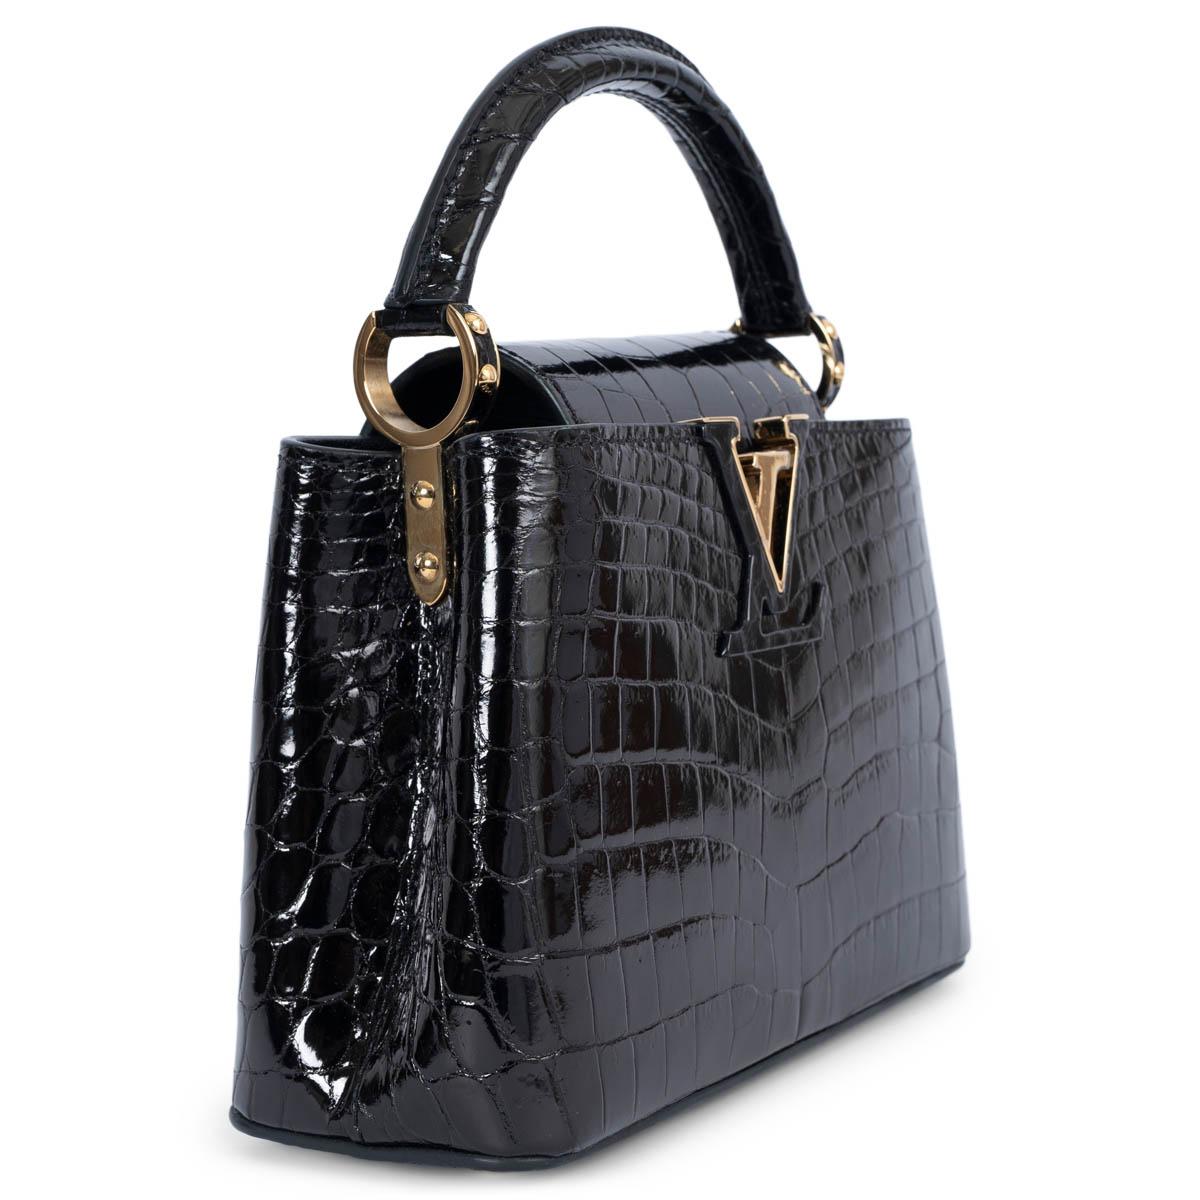 Die 100% authentische Louis Vuitton Capucines Mini Bag aus dunkelbraunem Crocodilien Brillant ist auf Hochglanz poliert, mit funkelnden goldfarbenen Metallbeschlägen und edlem Ziegenlederfutter. Die ikonische Capucines-Klappe kann außen getragen